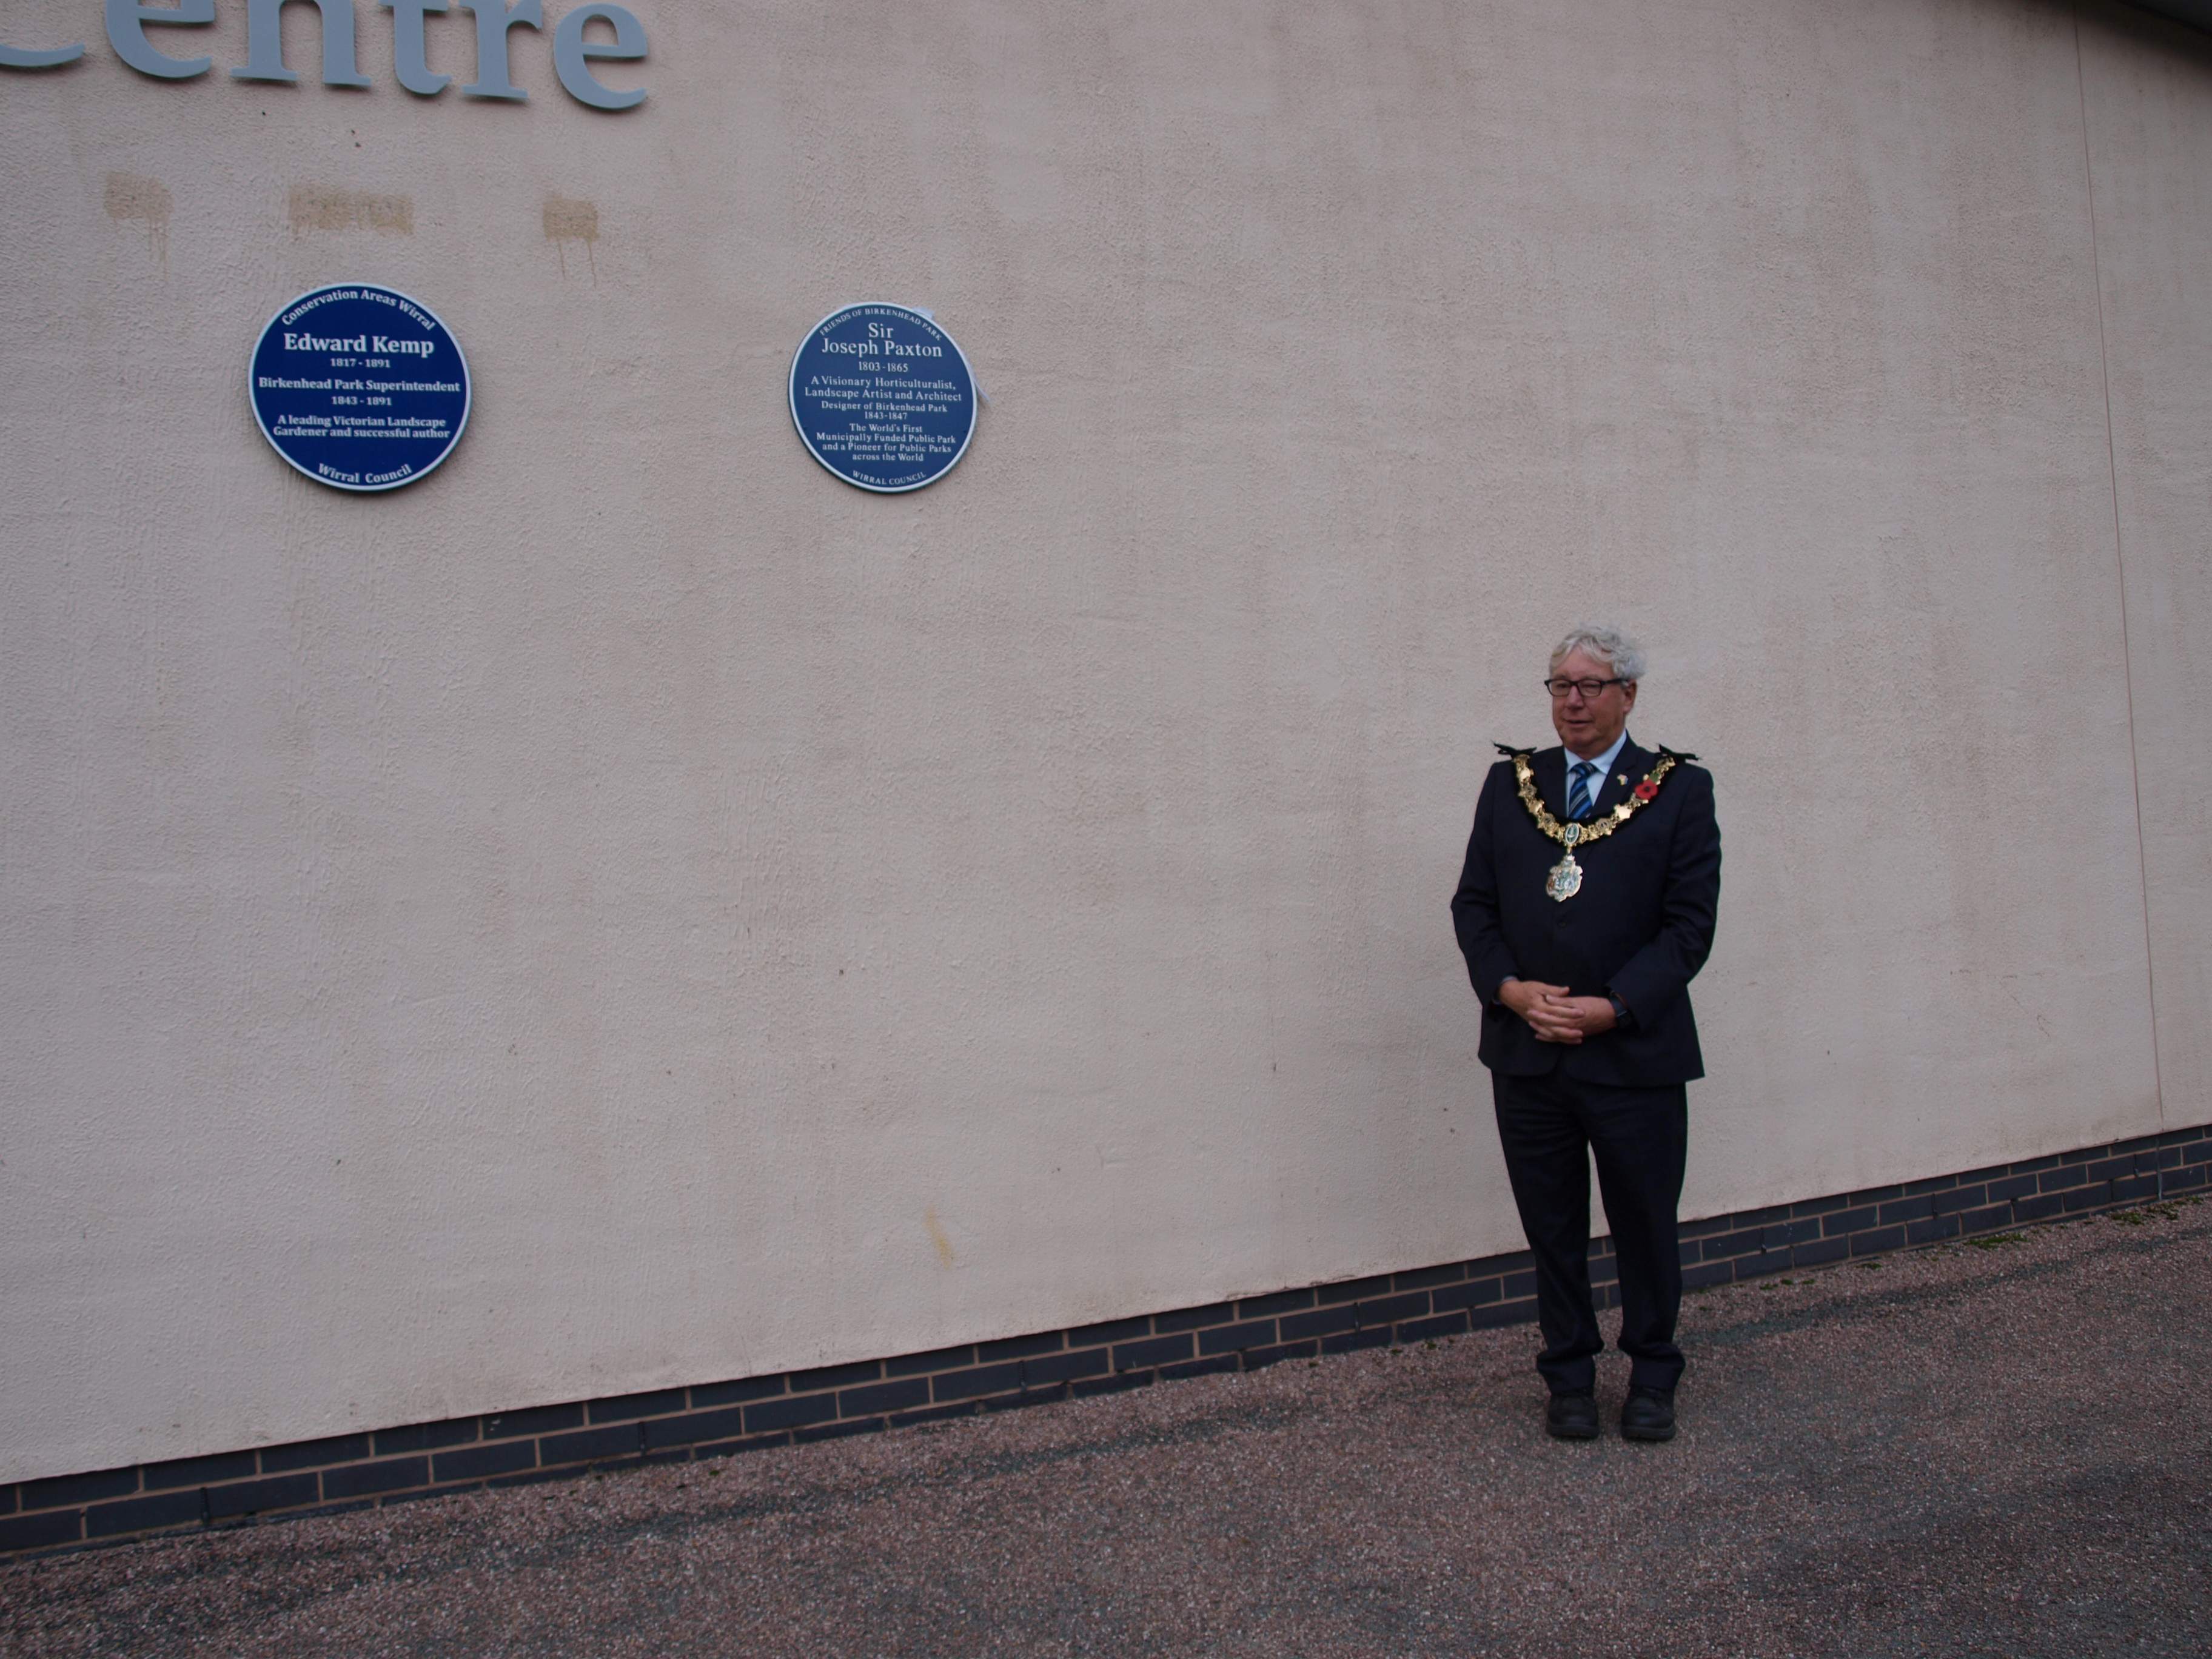 The Paxton Blue plaque alongside the Edward Kemp plaque